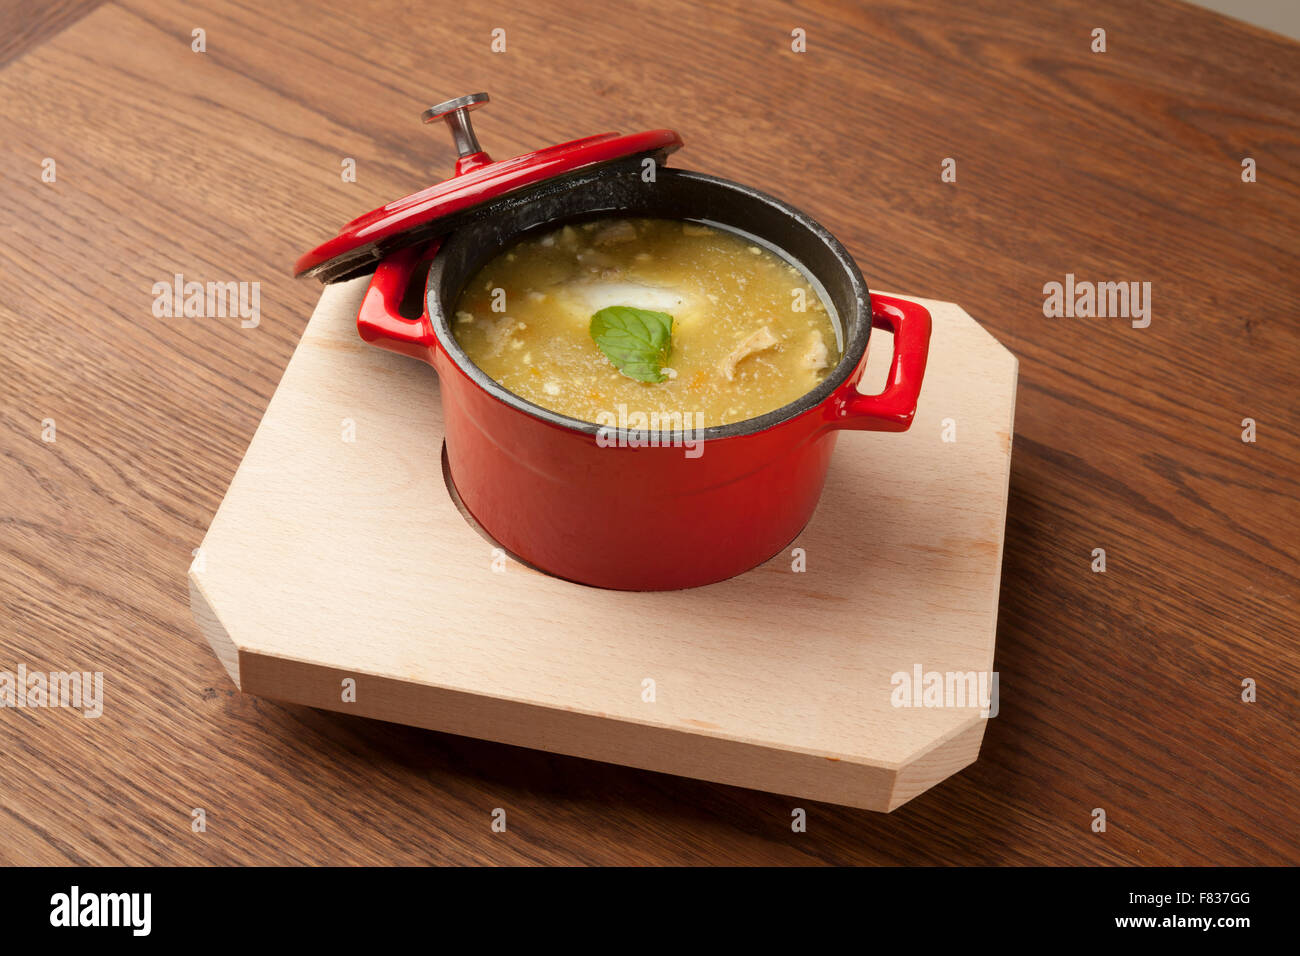 Zuppa di pollo in una ciotola rossa sul piatto di legno Foto Stock